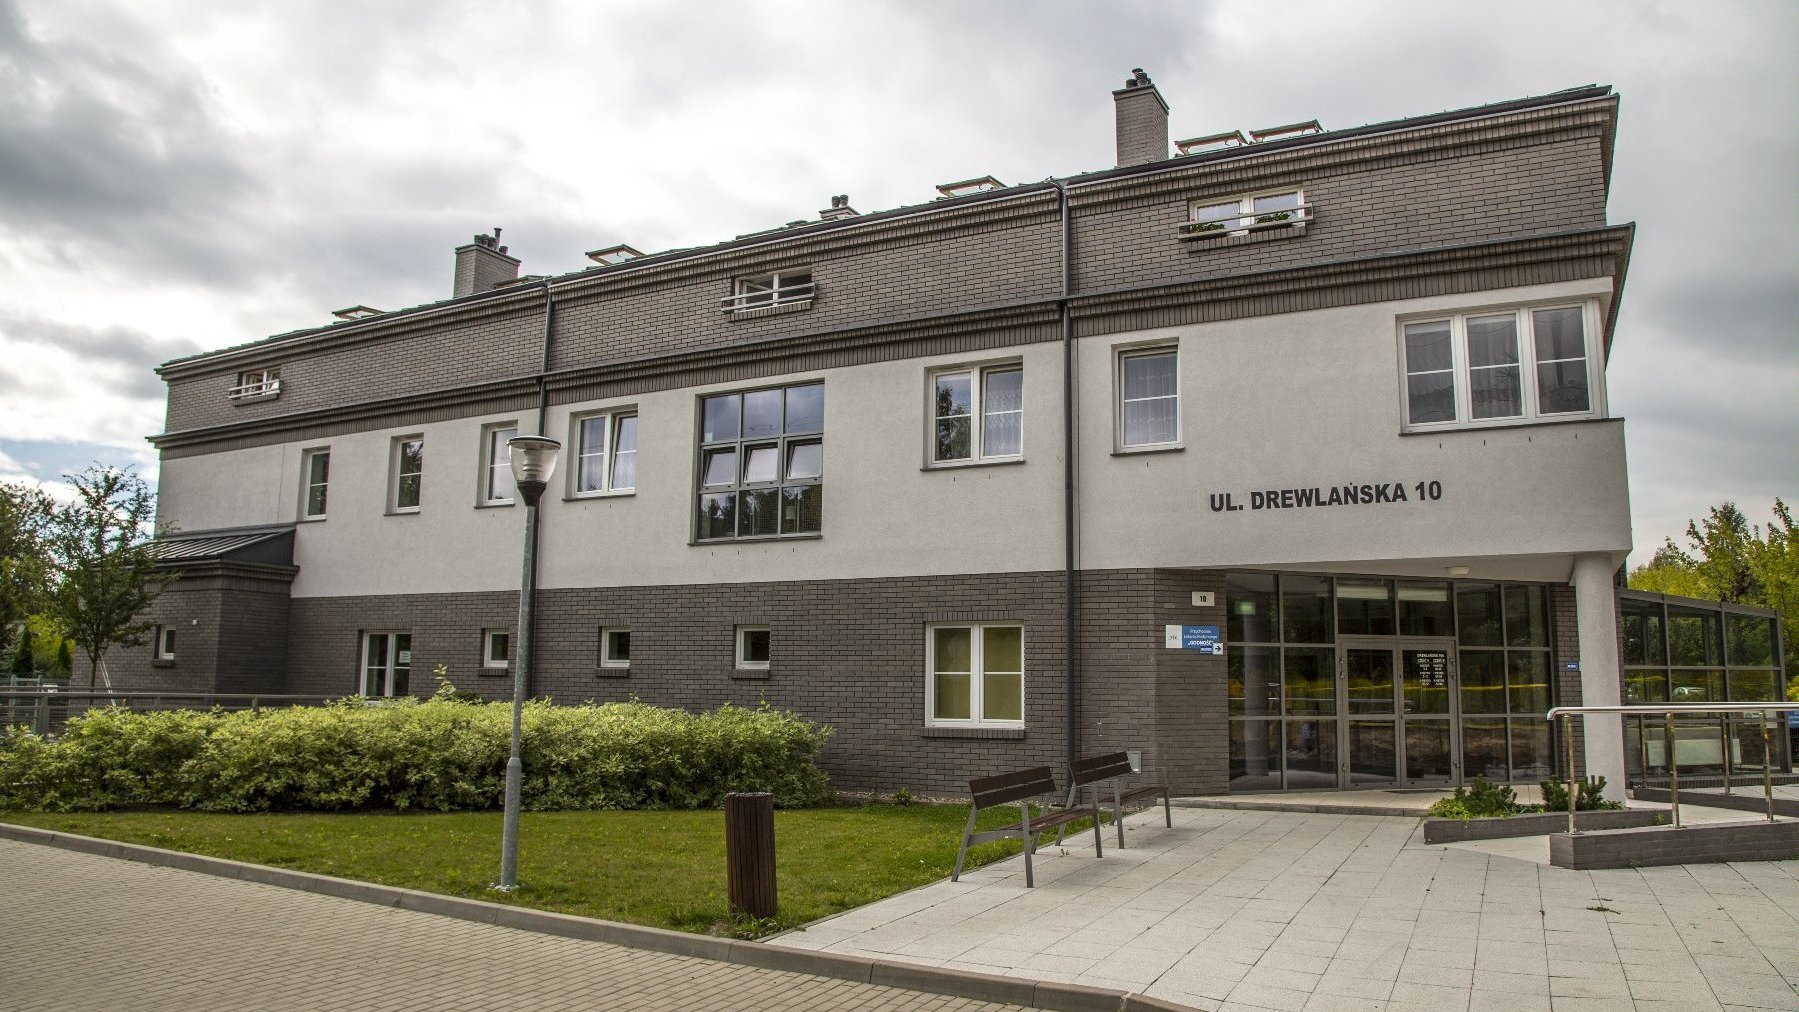 Budynek w kolorze jasnej i ciemnej szarości z adresem "ul. Drewlańska 10" oraz ławki i zieleń przed budynkiem